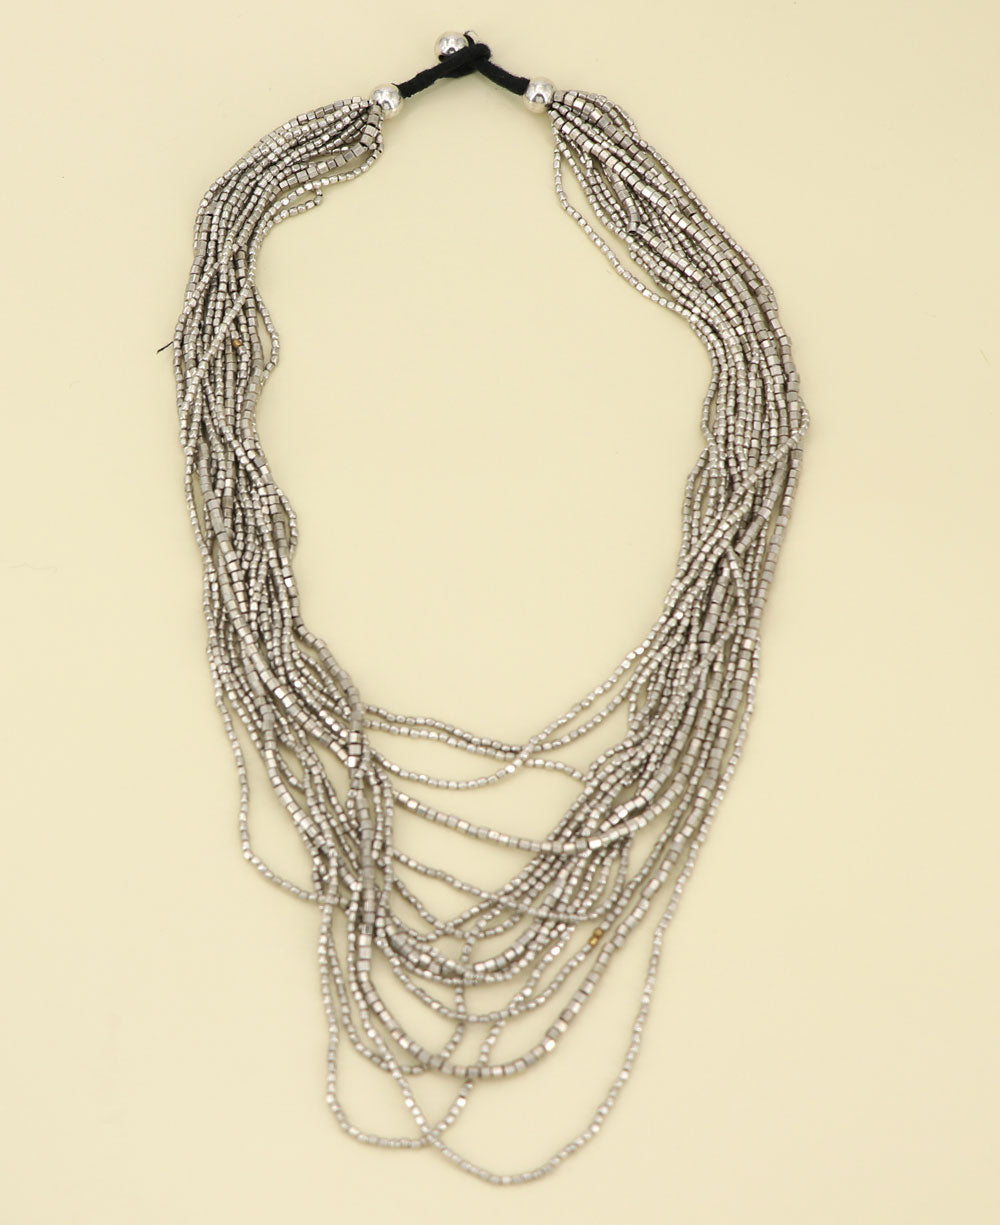 Antique silver tone multi strand necklace